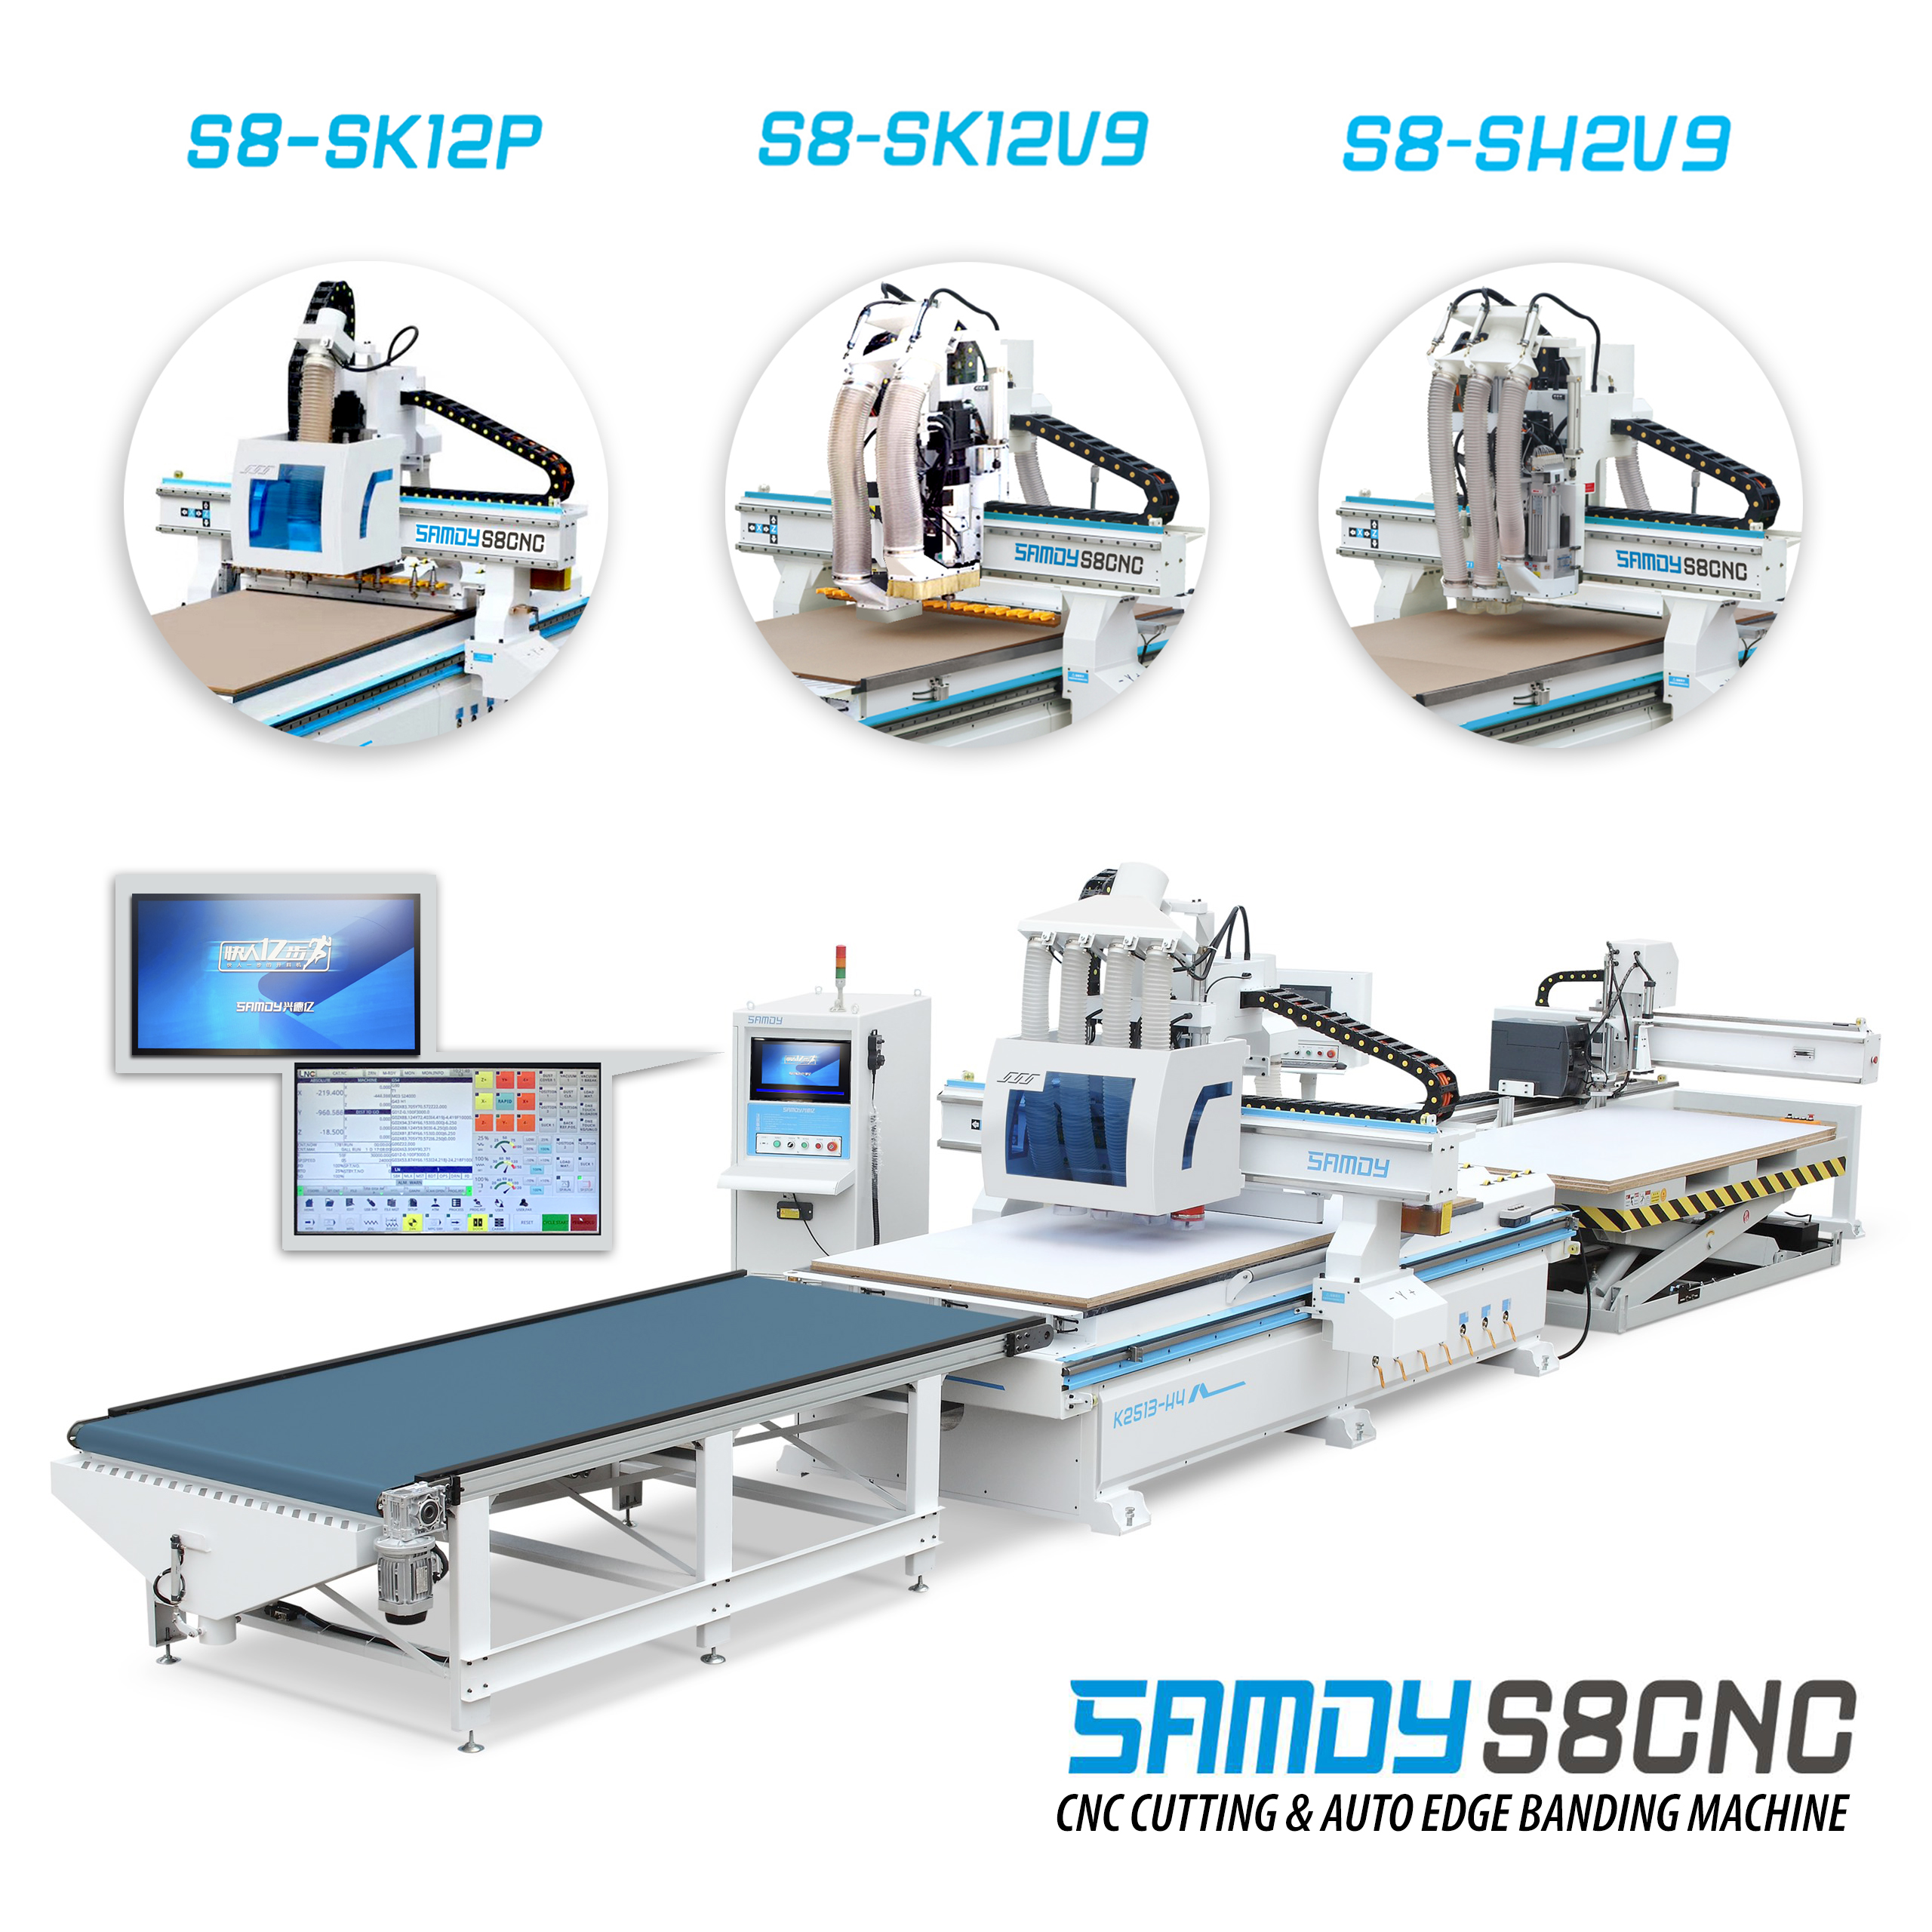 Mô hình CNC SAMDY S8CNC tiêu chuẩn cho sản xuất quy mô nhà xưởng